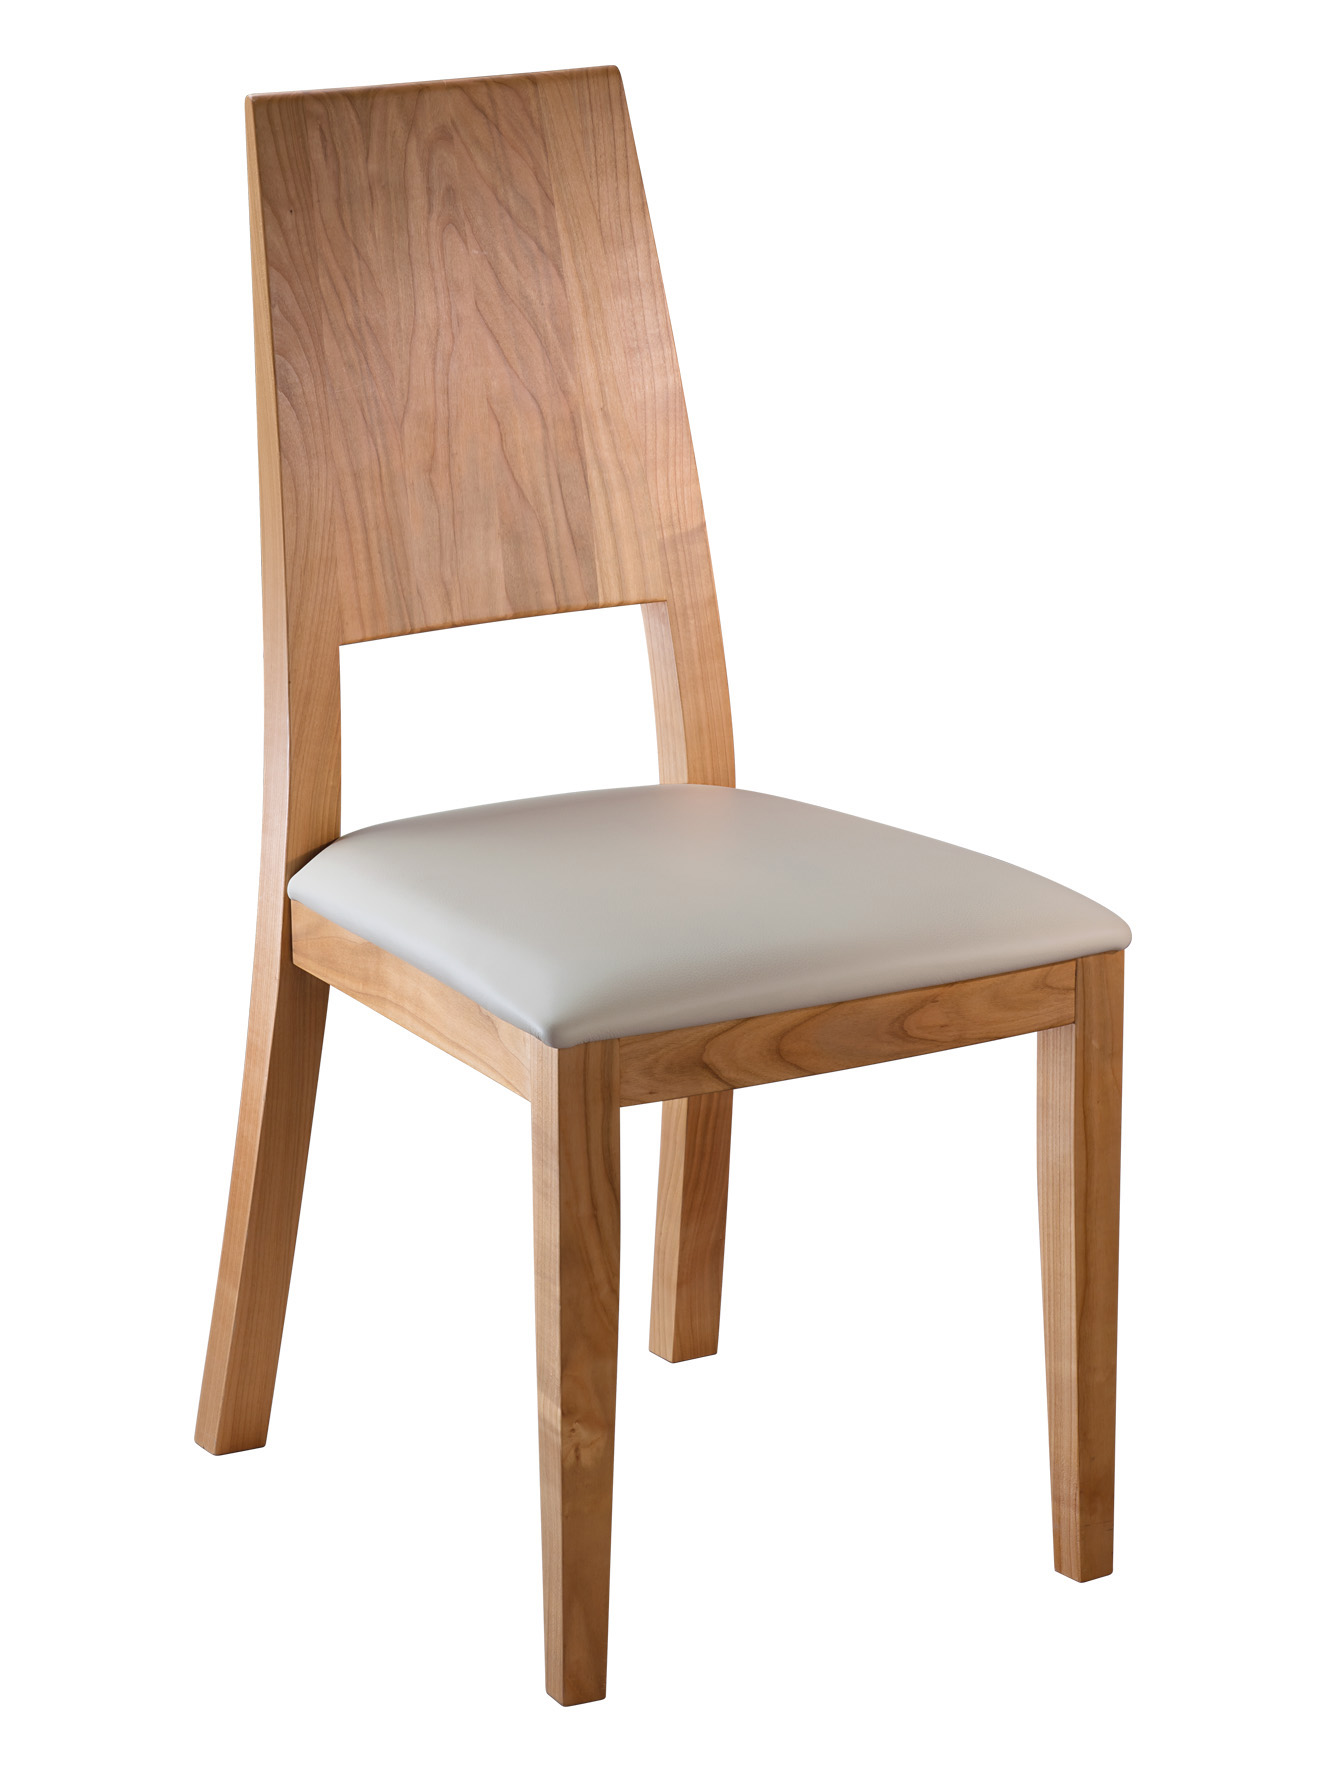 CLASSIC Stuhl mit Polstersitz und hohem Rücken